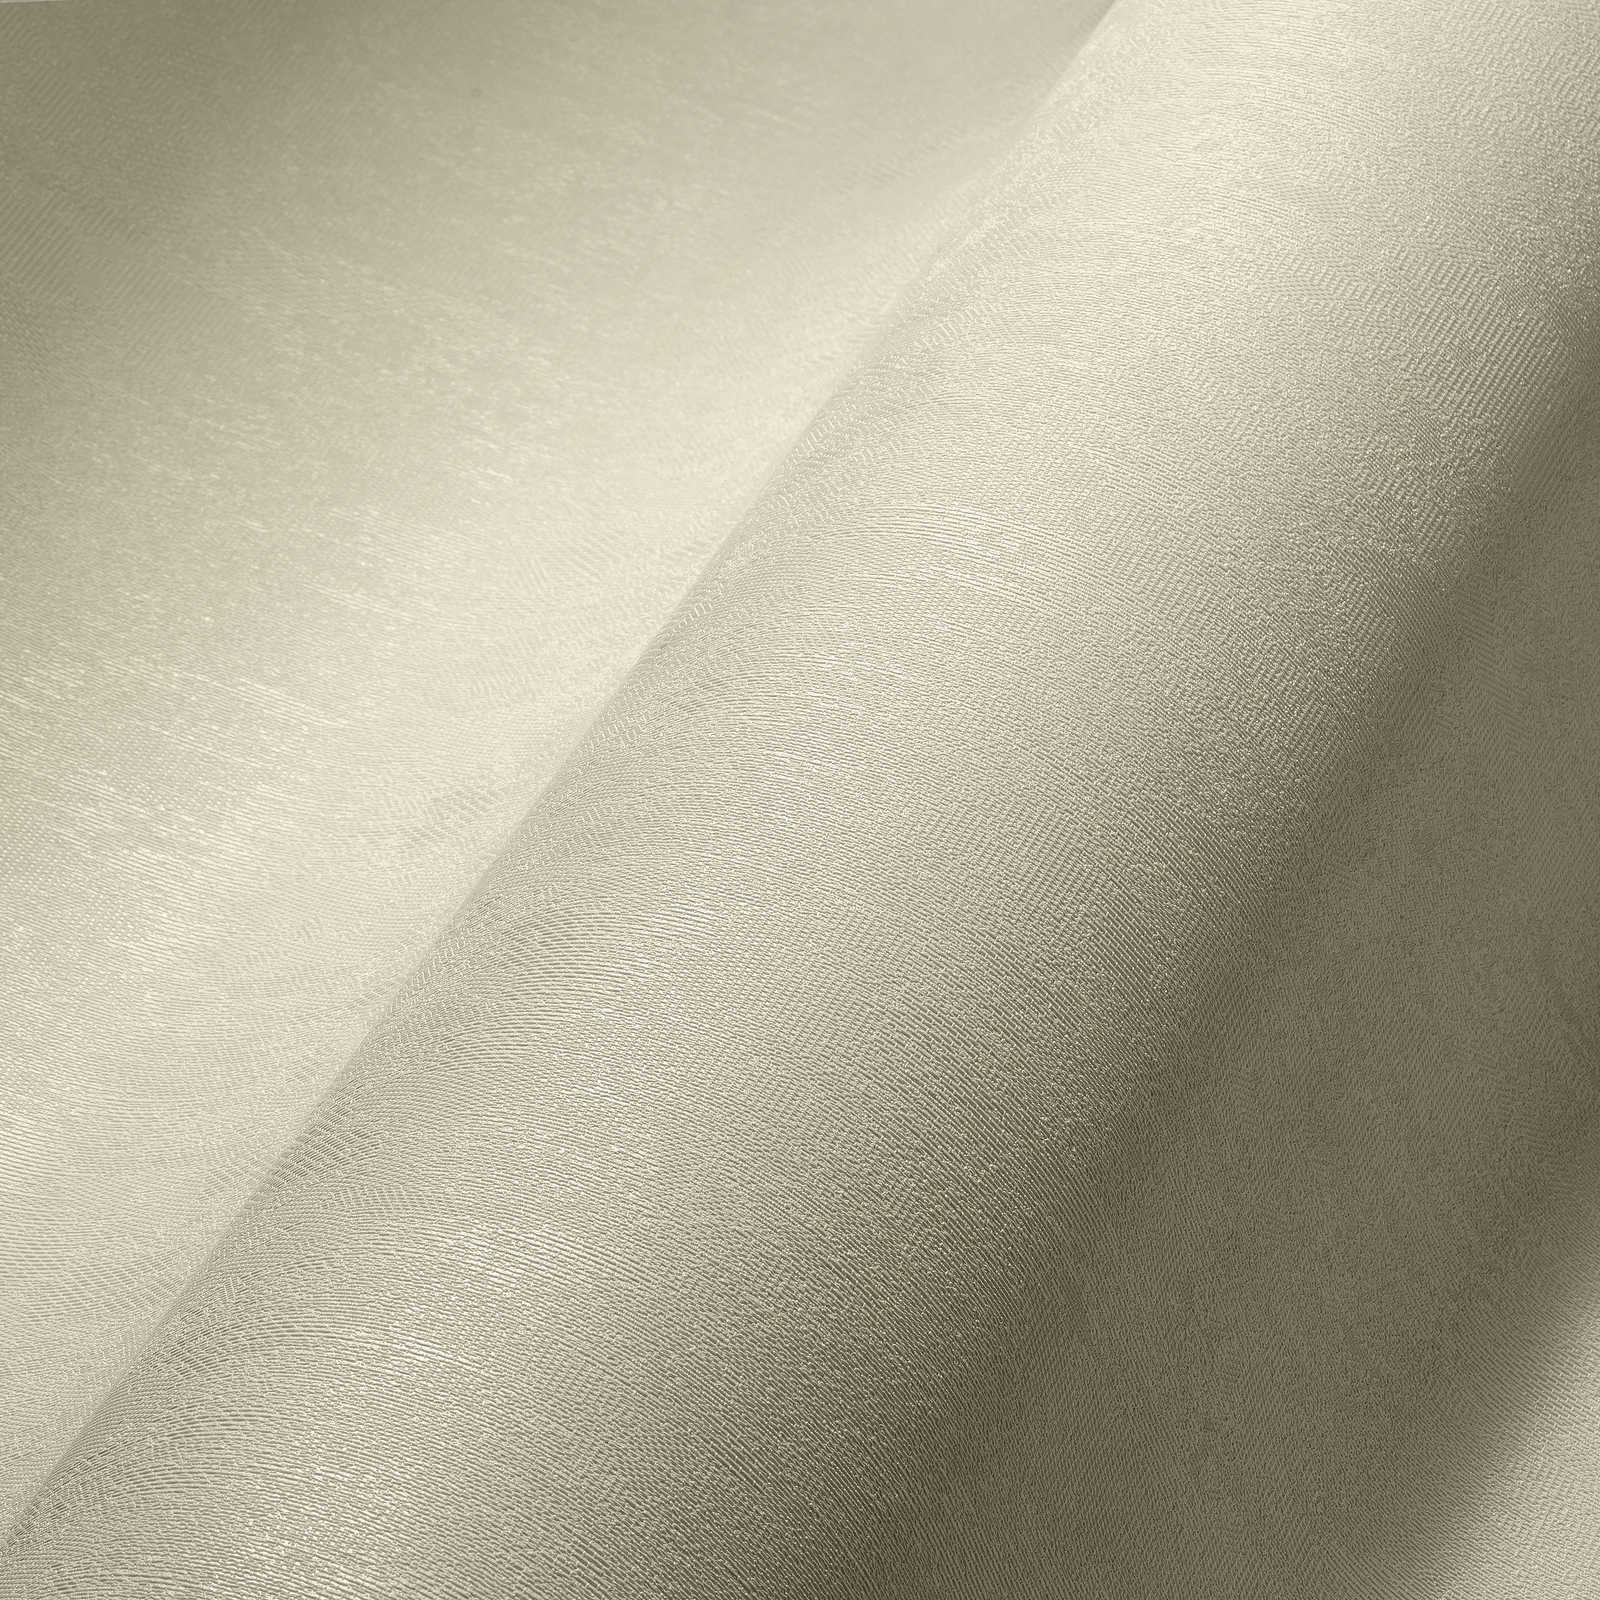             Vliestapete Creme-Weiß unifarben mit Strukturoberfläche
        